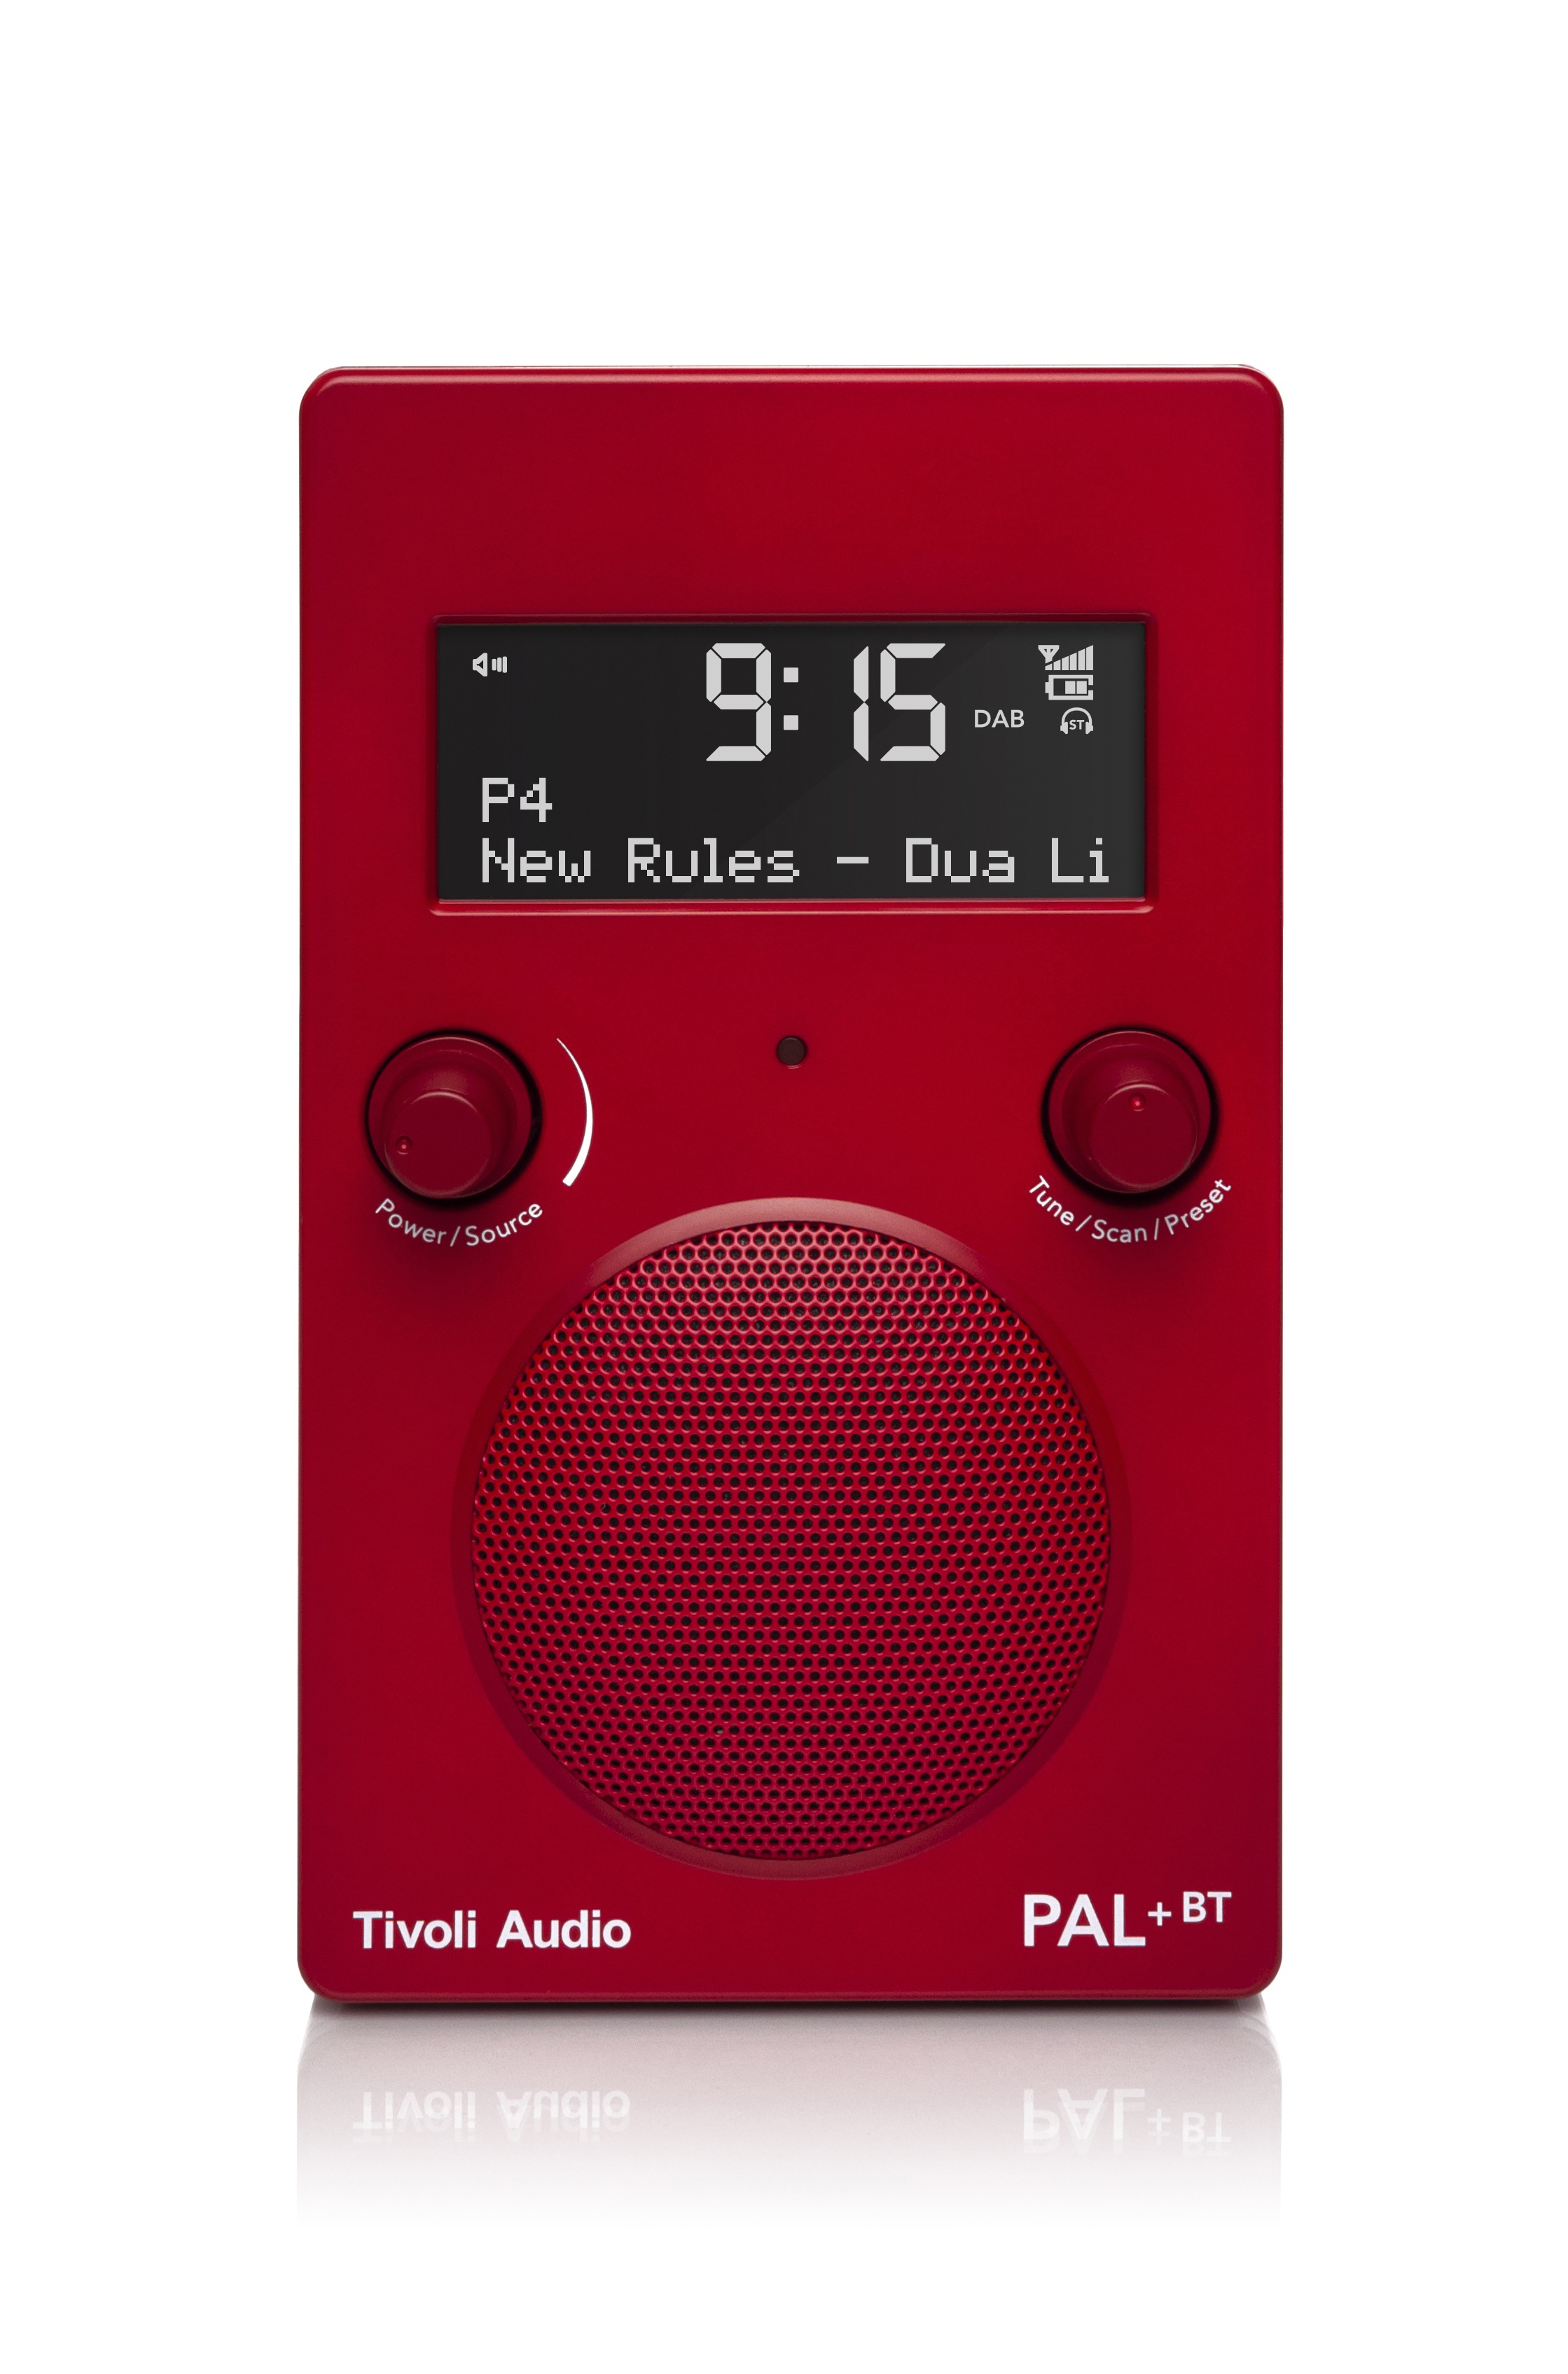 TIVOLI AUDIO DAB+, Radio, Bluetooth, BT DAB+ PAL+ DAB+, FM, Rot